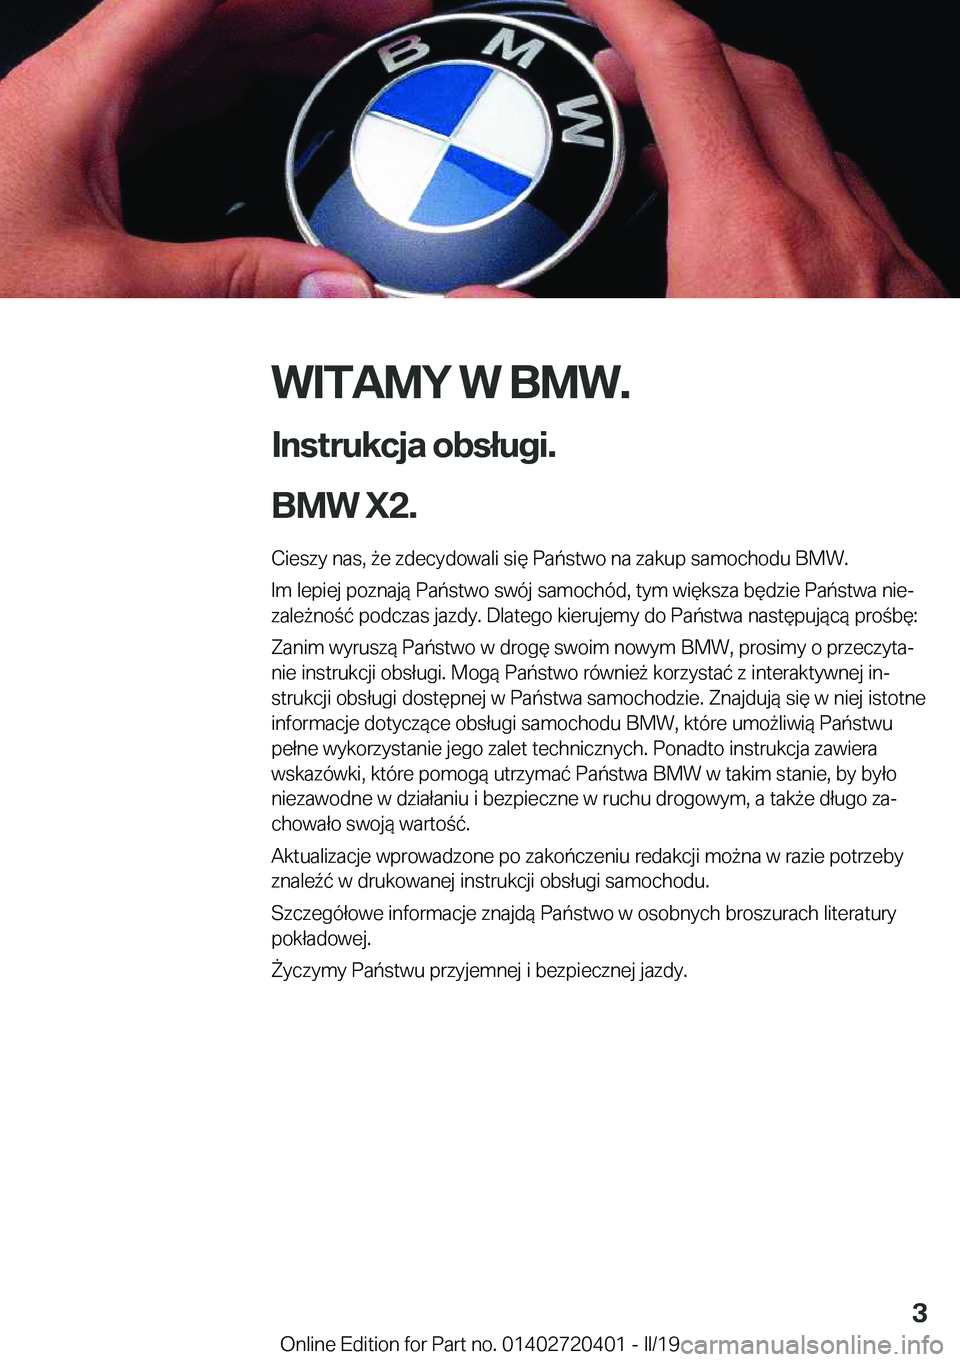 BMW X2 2019  Instrukcja obsługi (in Polish) �W�I�T�A�M�Y��W��B�M�W�.
�I�n�s�t�r�u�k�c�j�a��o�b�s�ł�u�g�i�.
�B�M�W��X�2�. �C�i�e�s�z�y��n�a�s�,�9�e��z�d�e�c�y�d�o�w�a�l�i��s�i�